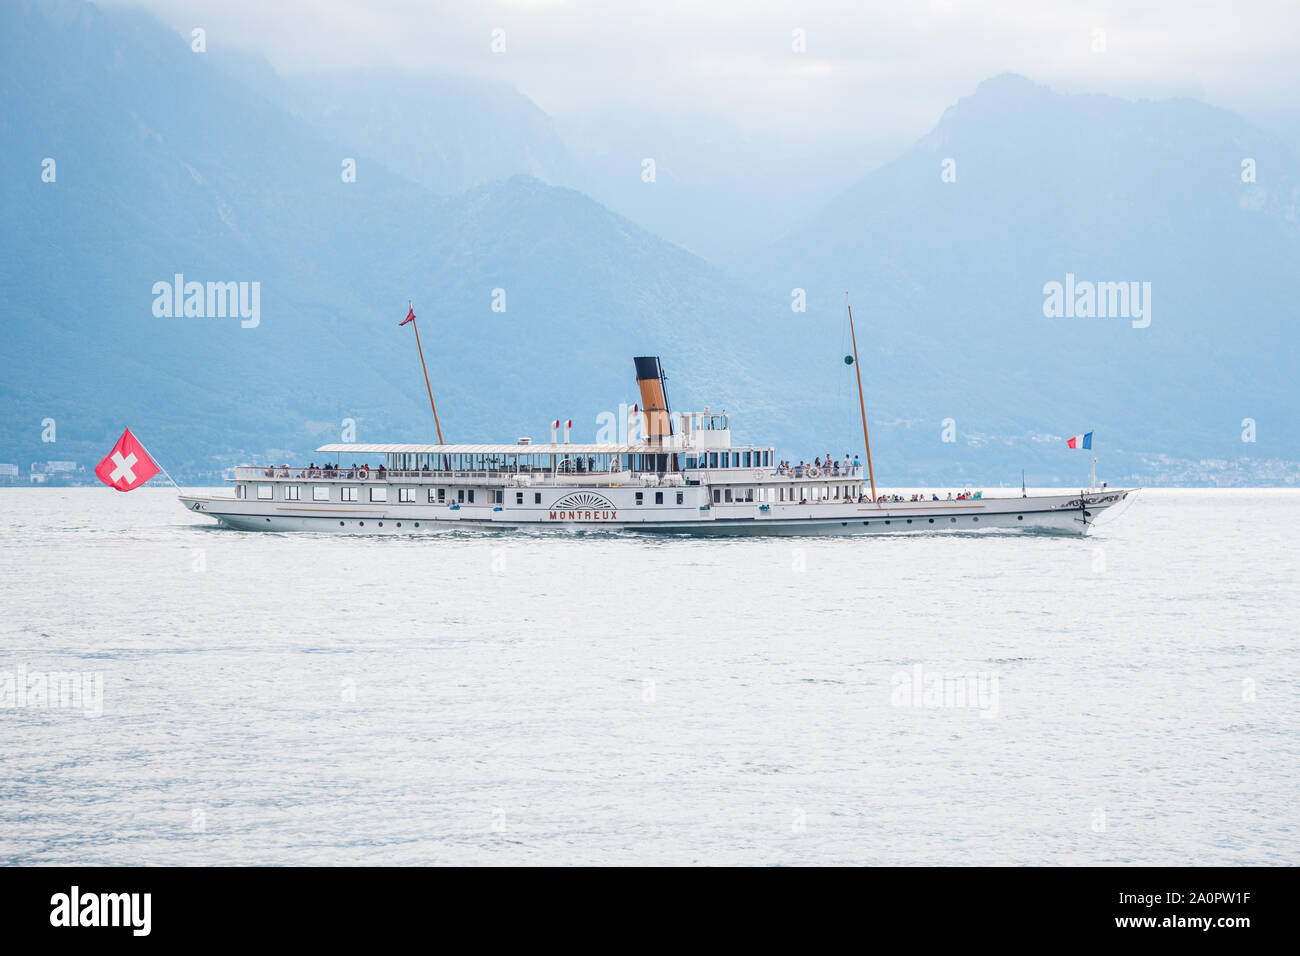 Les touristes à bord du plus ancien bateau à aubes à vapeur Belle Epoque Montreux bénéficiant d'une croisière sur le lac de Genève (Lac Léman) entre la Suisse et la France Banque D'Images